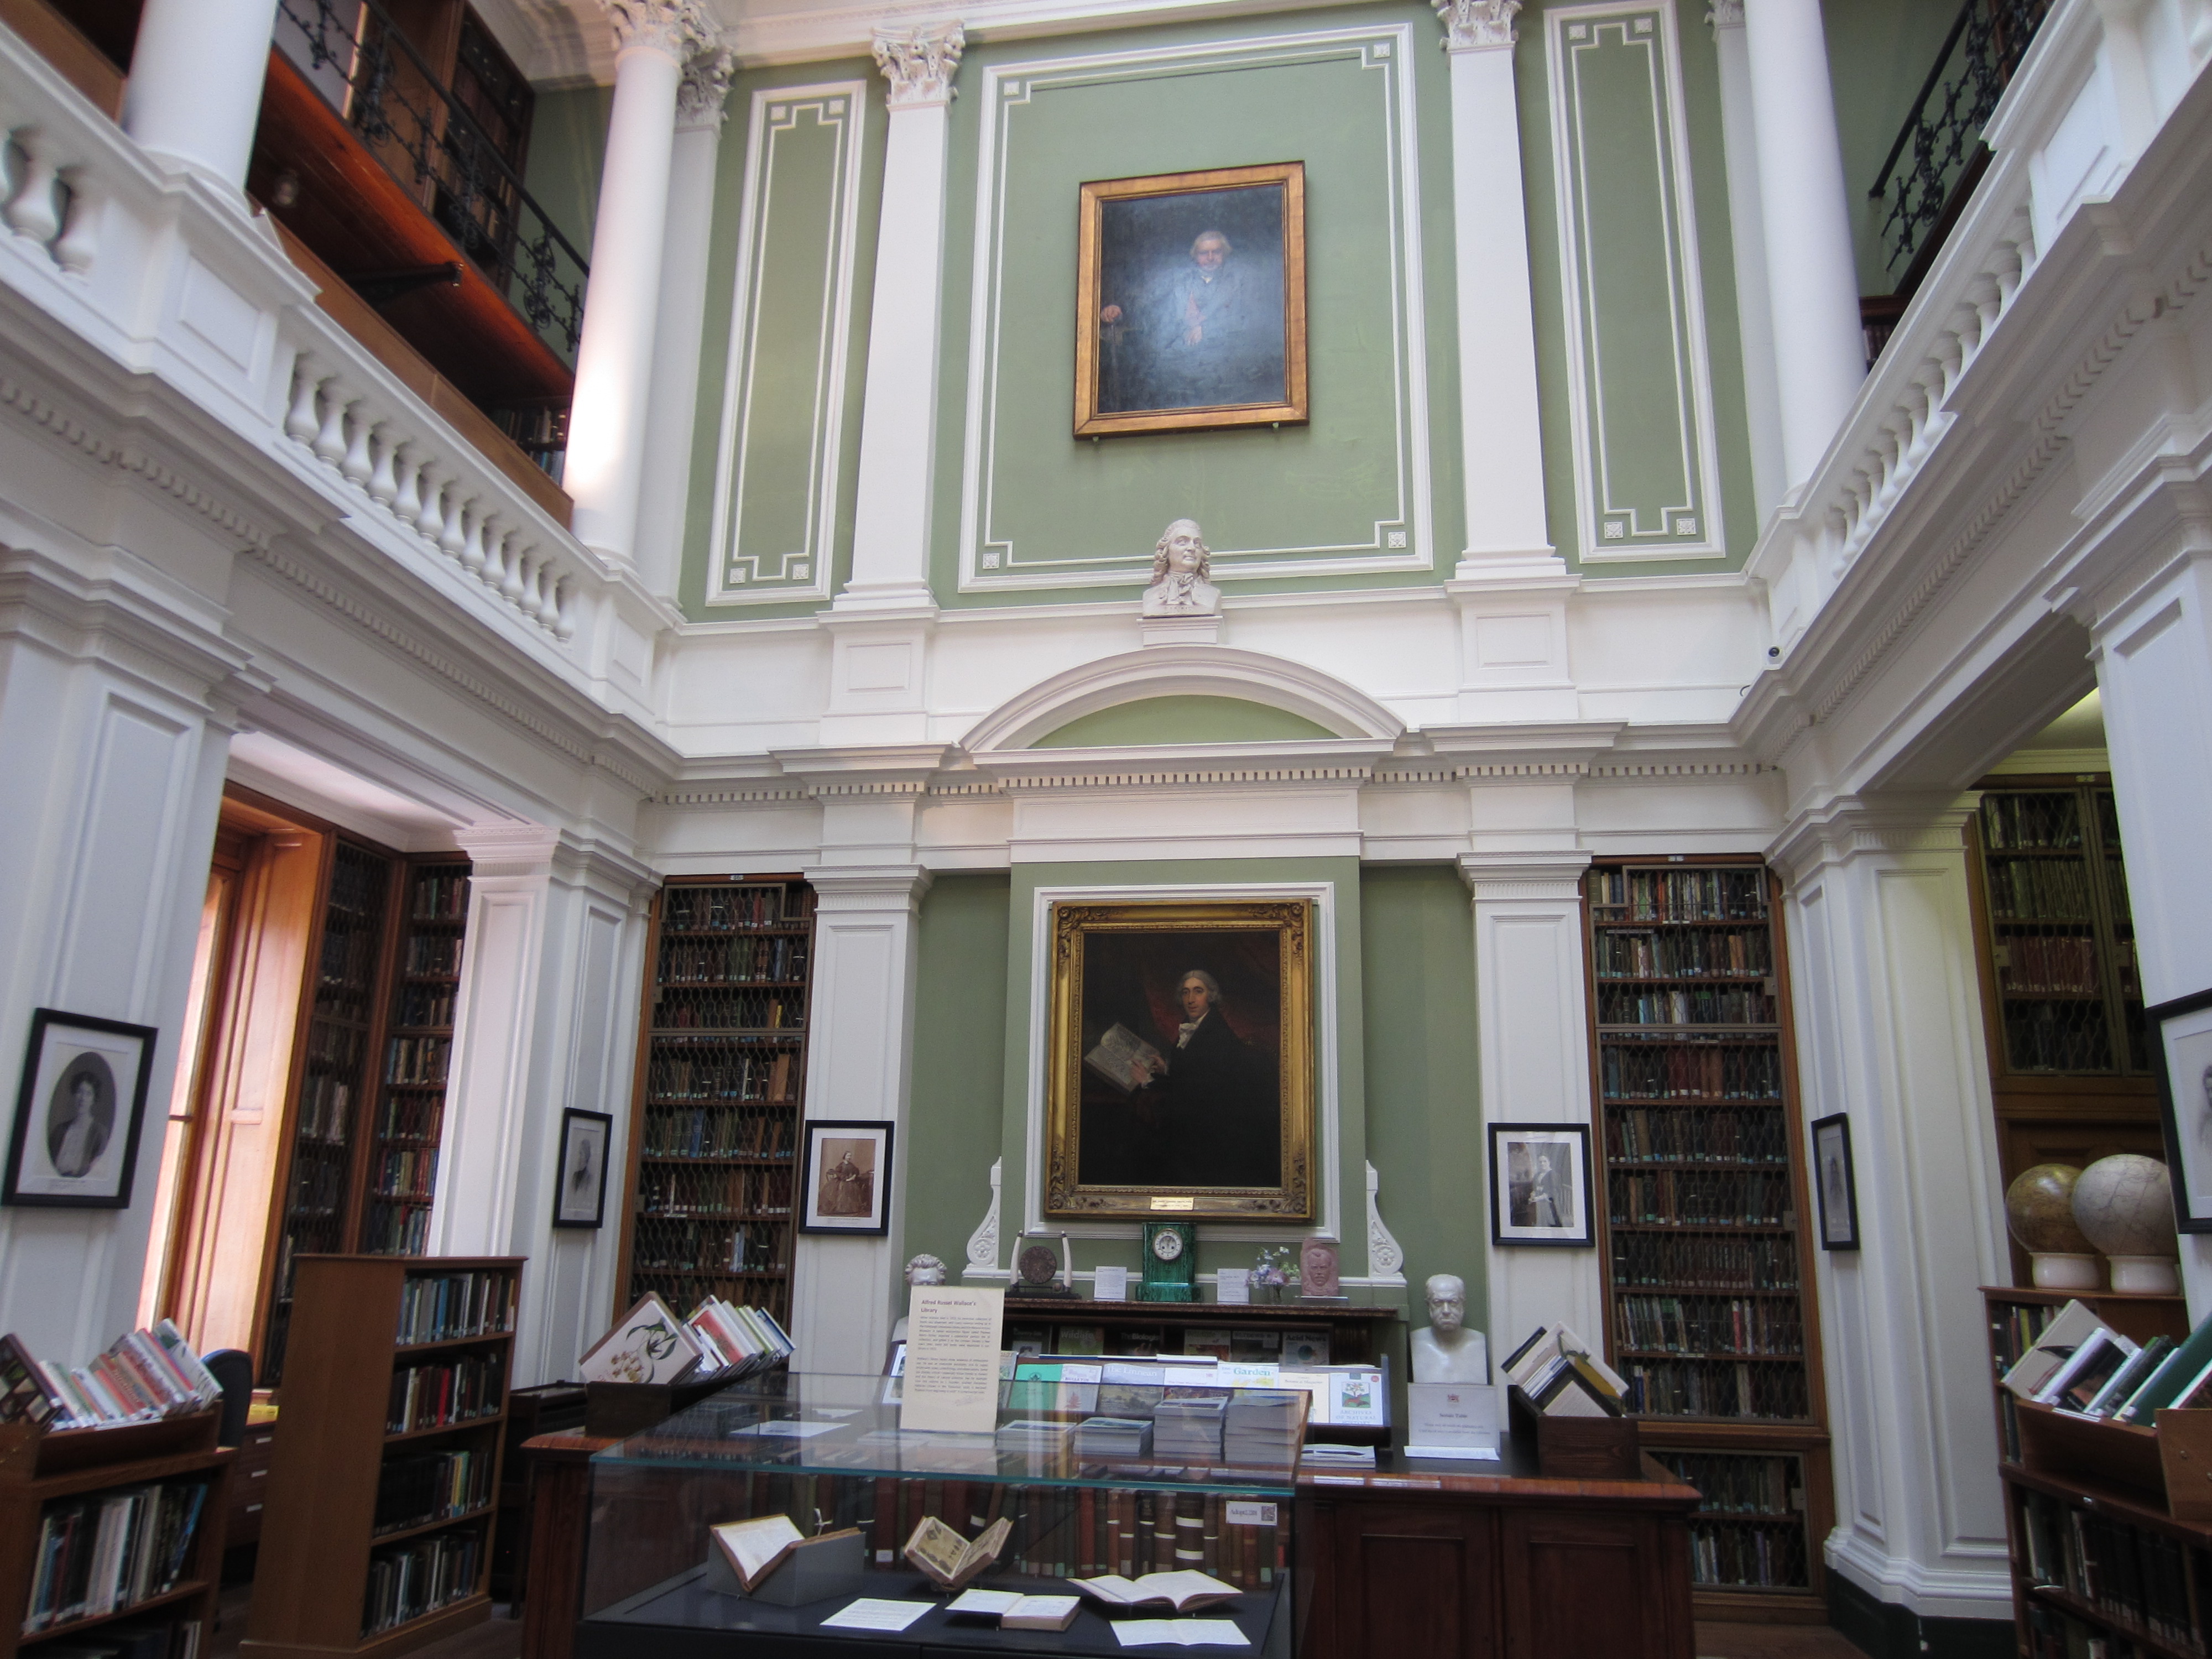 ロンドン・リンネ協会の図書館で、19世紀英国の産業デザイナーが執筆した論文・資料を調査をした時の写真です。ヴィクトリア時代のデザインの面白いところは、科学と芸術がが非常に近い関係にあったことです。例えば官立デザイン学校では、「芸術植物学」と呼ばれる授業がありました。（※リンネ協会は、ダーウィンが初めて進化論を発表した学術機関としても知られています）